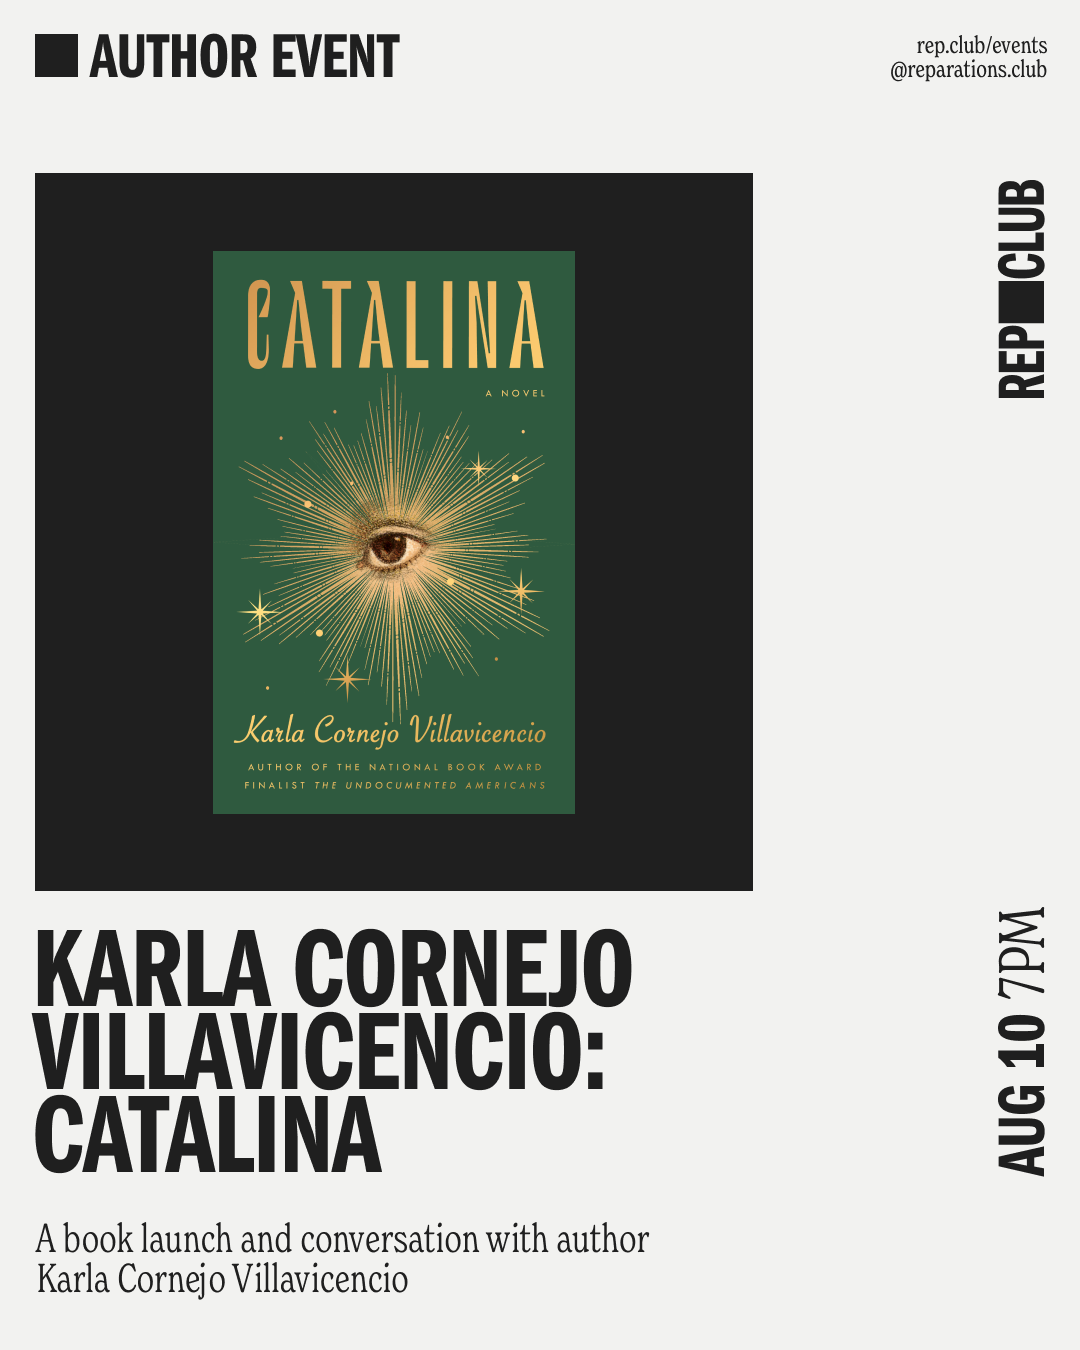 Aug 10th EVENT: Catalina // Karla Cornejo Villavicencio